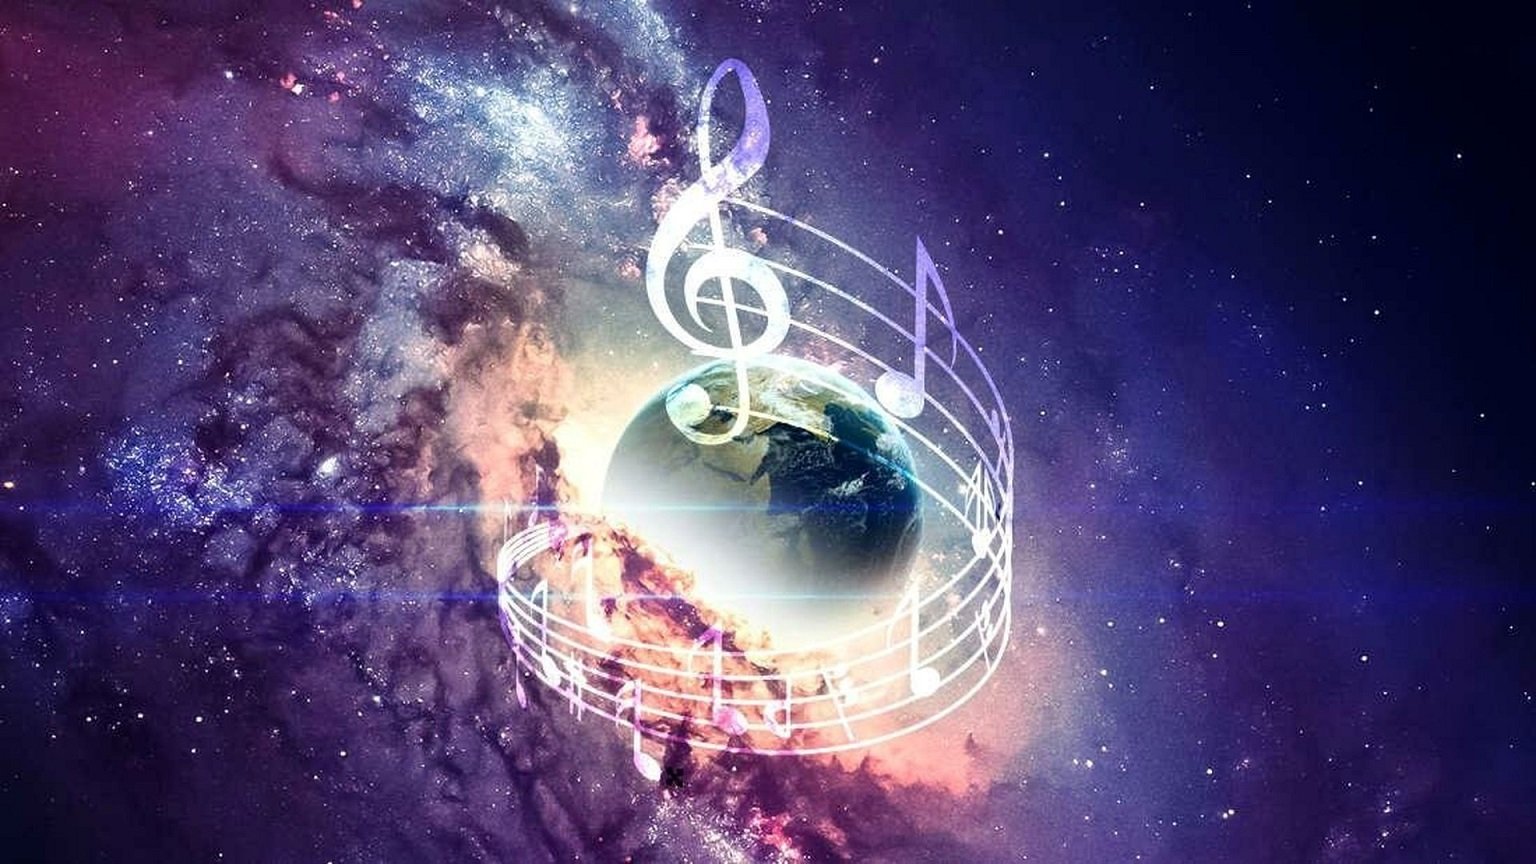 Мир музыка и развитие 2024